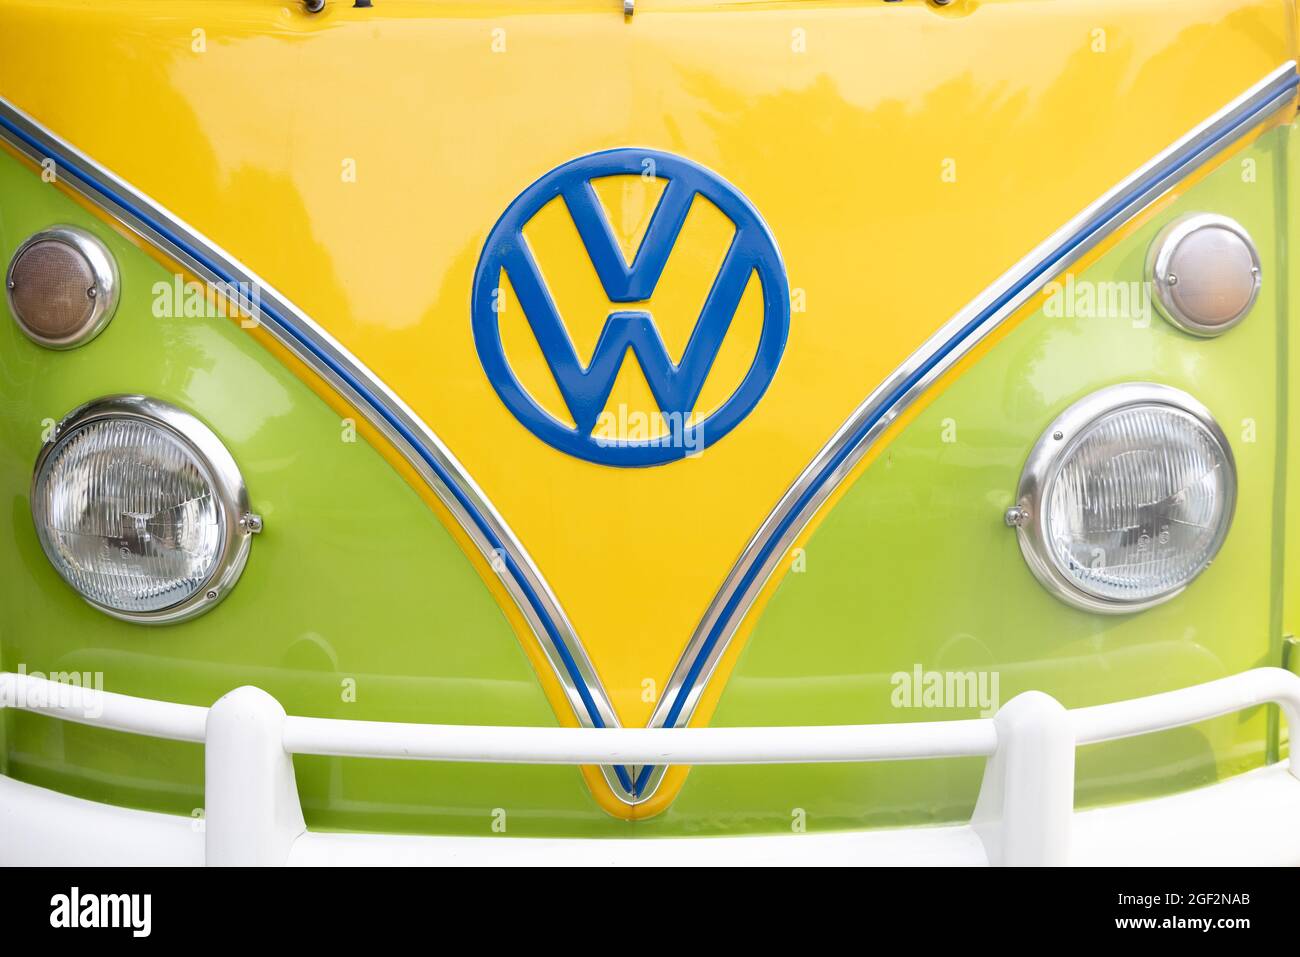 21-08-2021 Brasschaat, Anversa, Belgio la parte anteriore di un camper verde e giallo d'epoca VW o Vokswagen nei colori del Brasile, o reggae. Foto di alta qualità Foto Stock